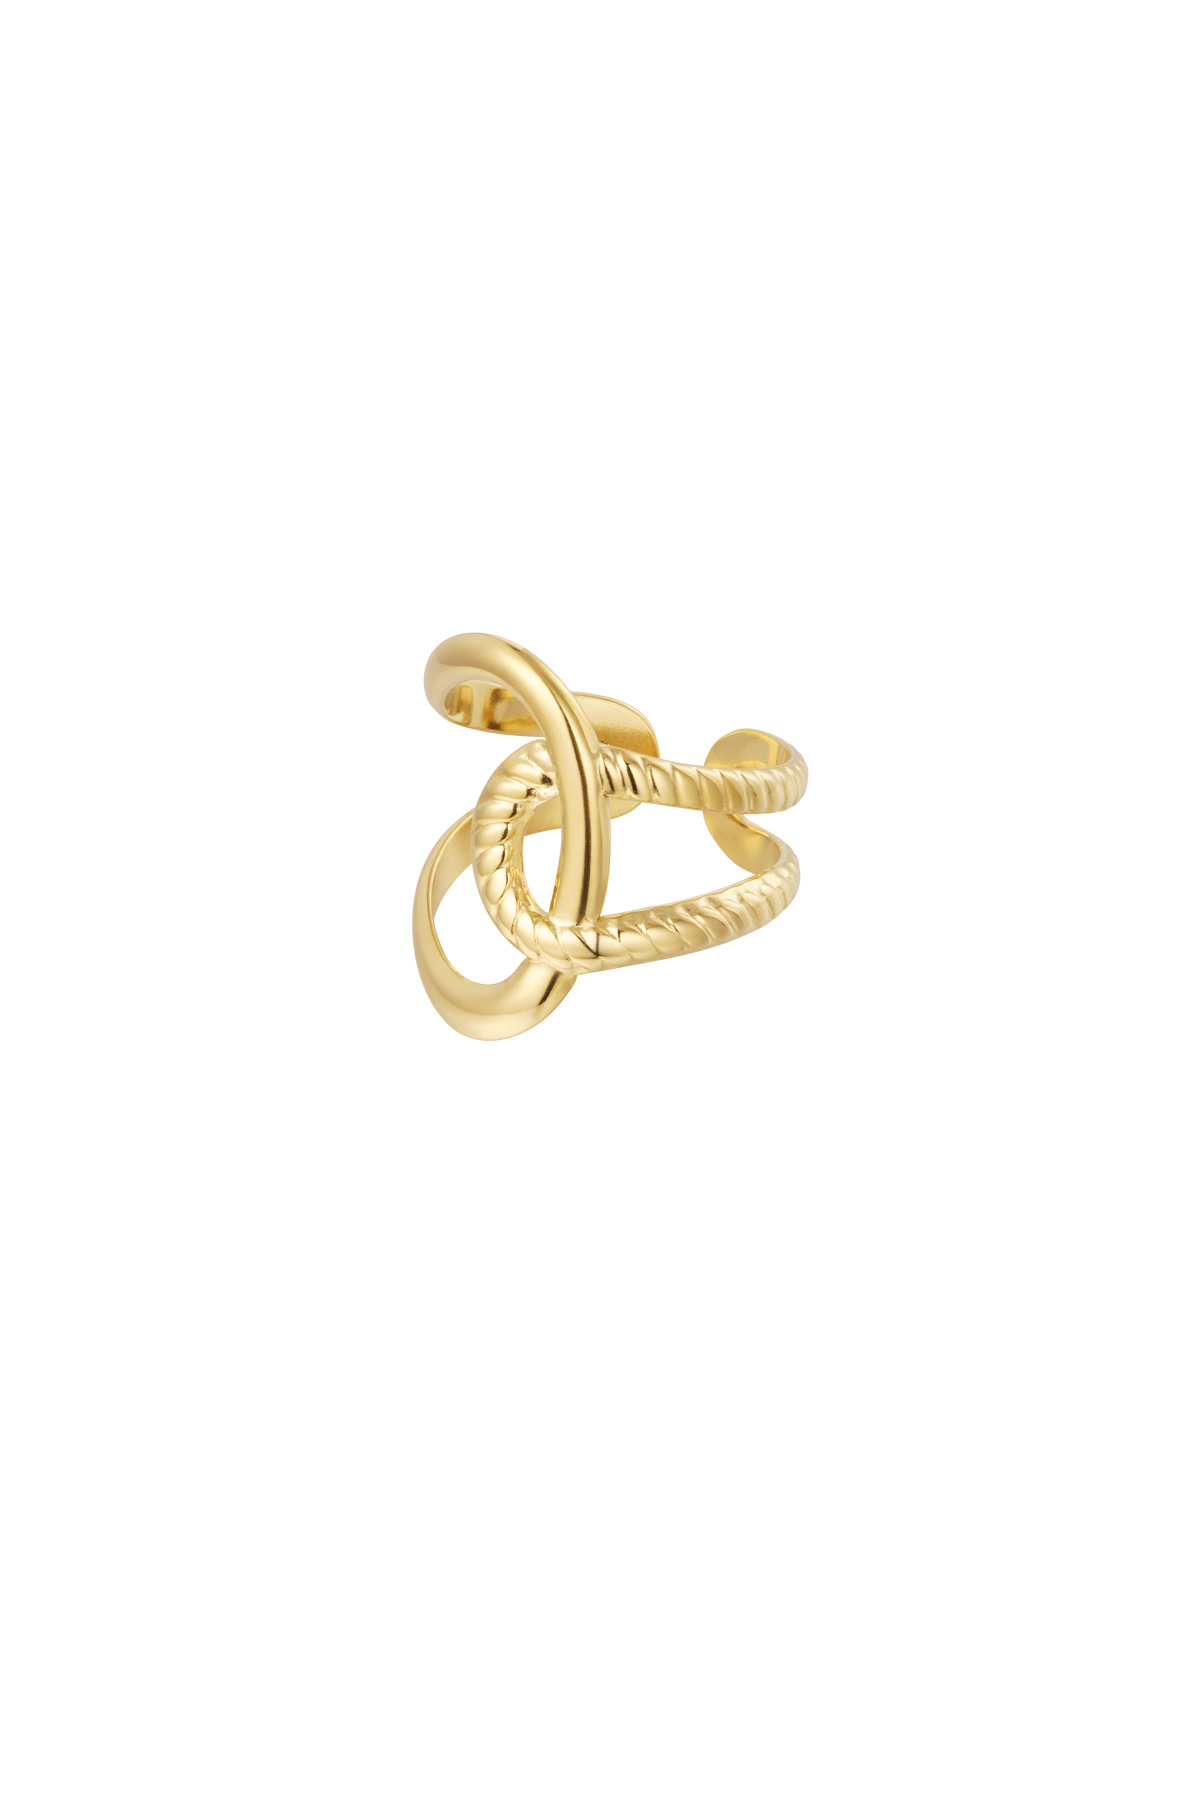 Detalle de nudo de anillo - oro